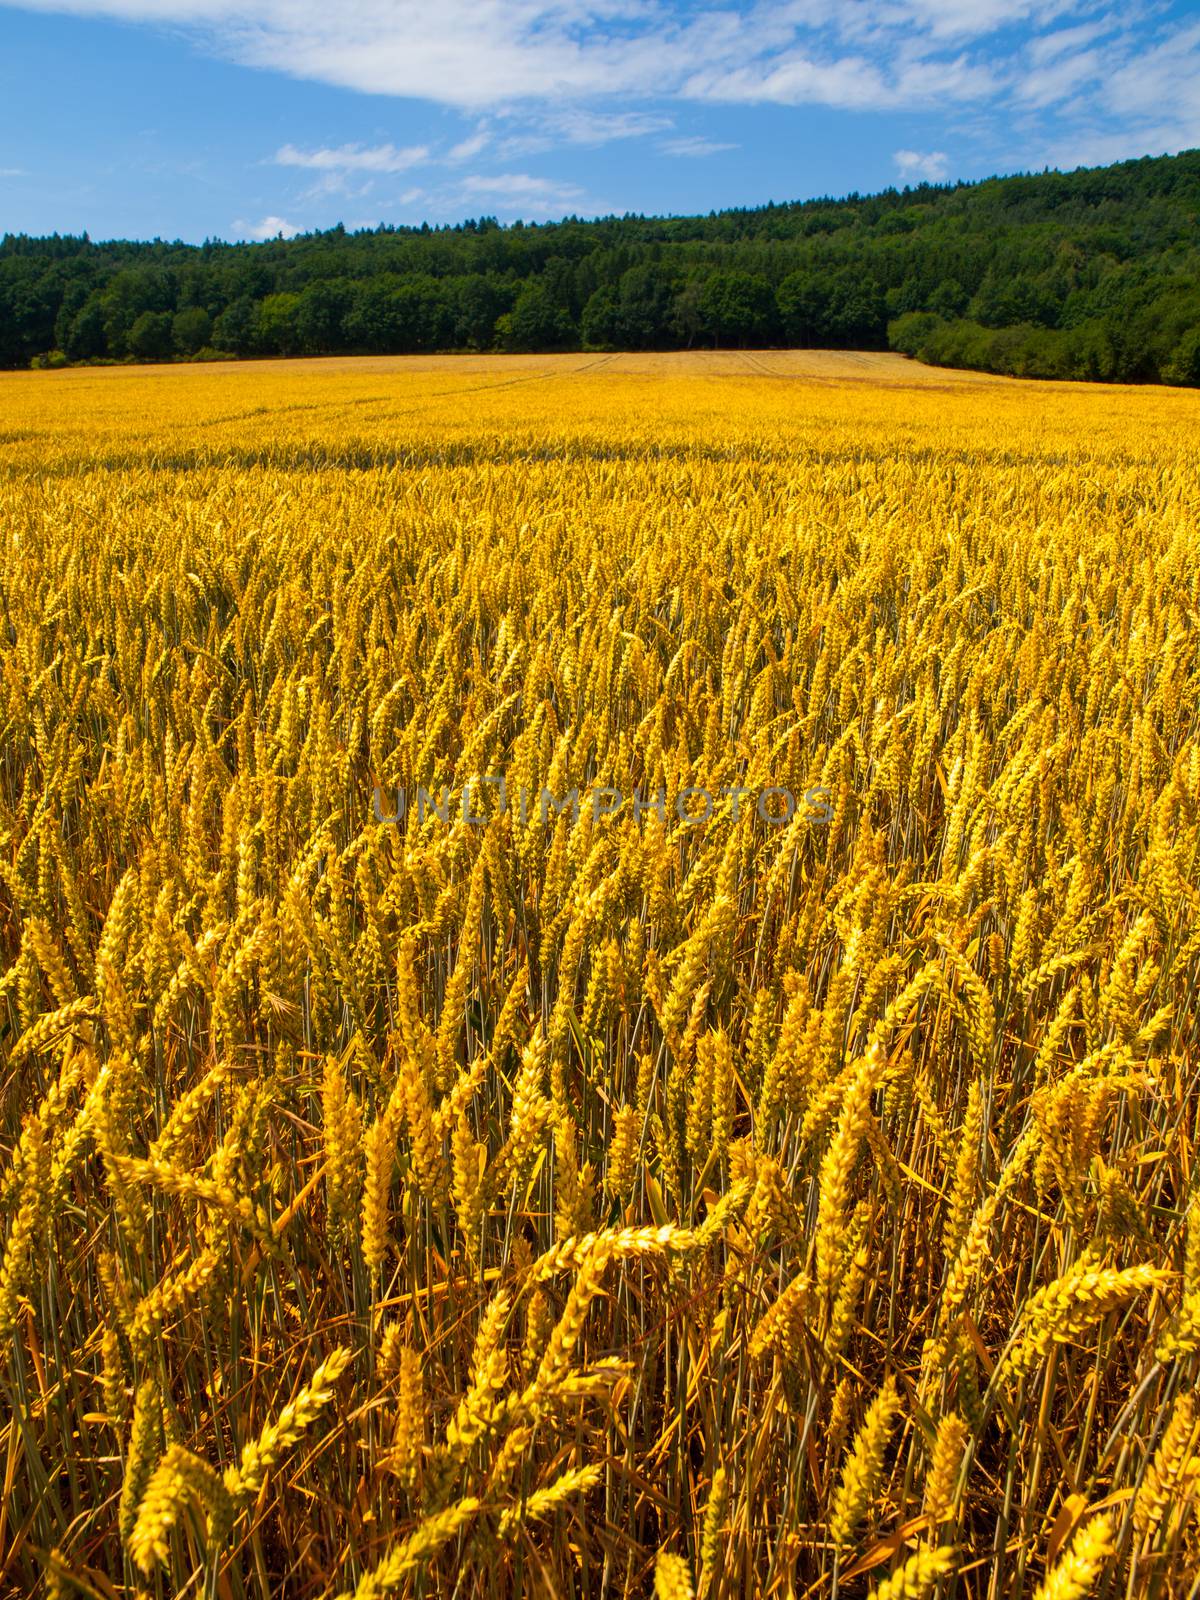 Golden summer filed of cereal under blue sky